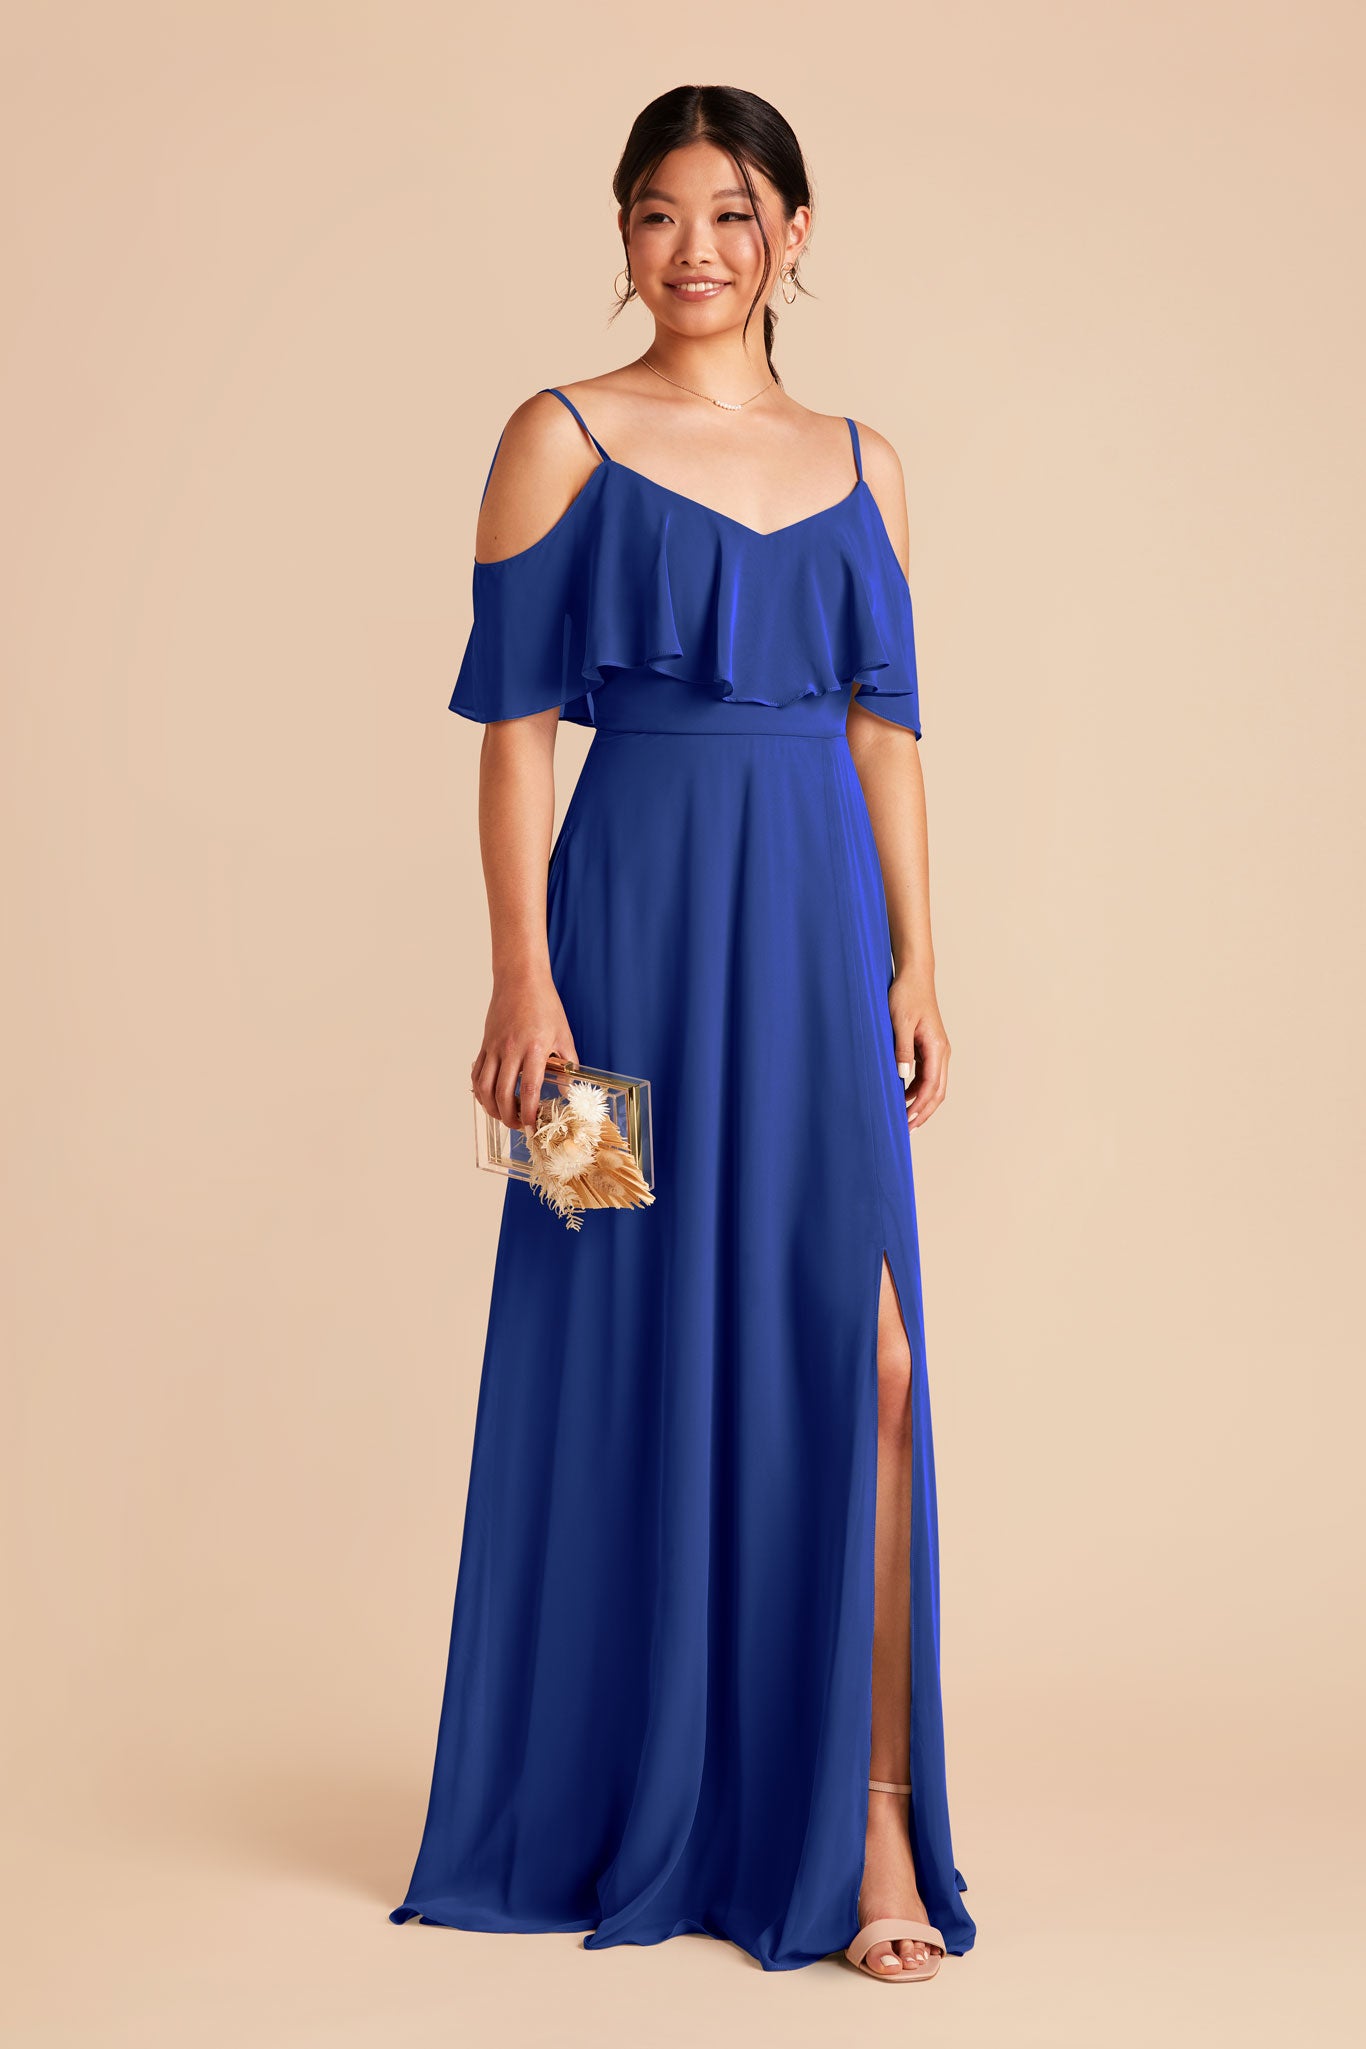 Cobalt Blue Jane Convertible Dress by Birdy Grey